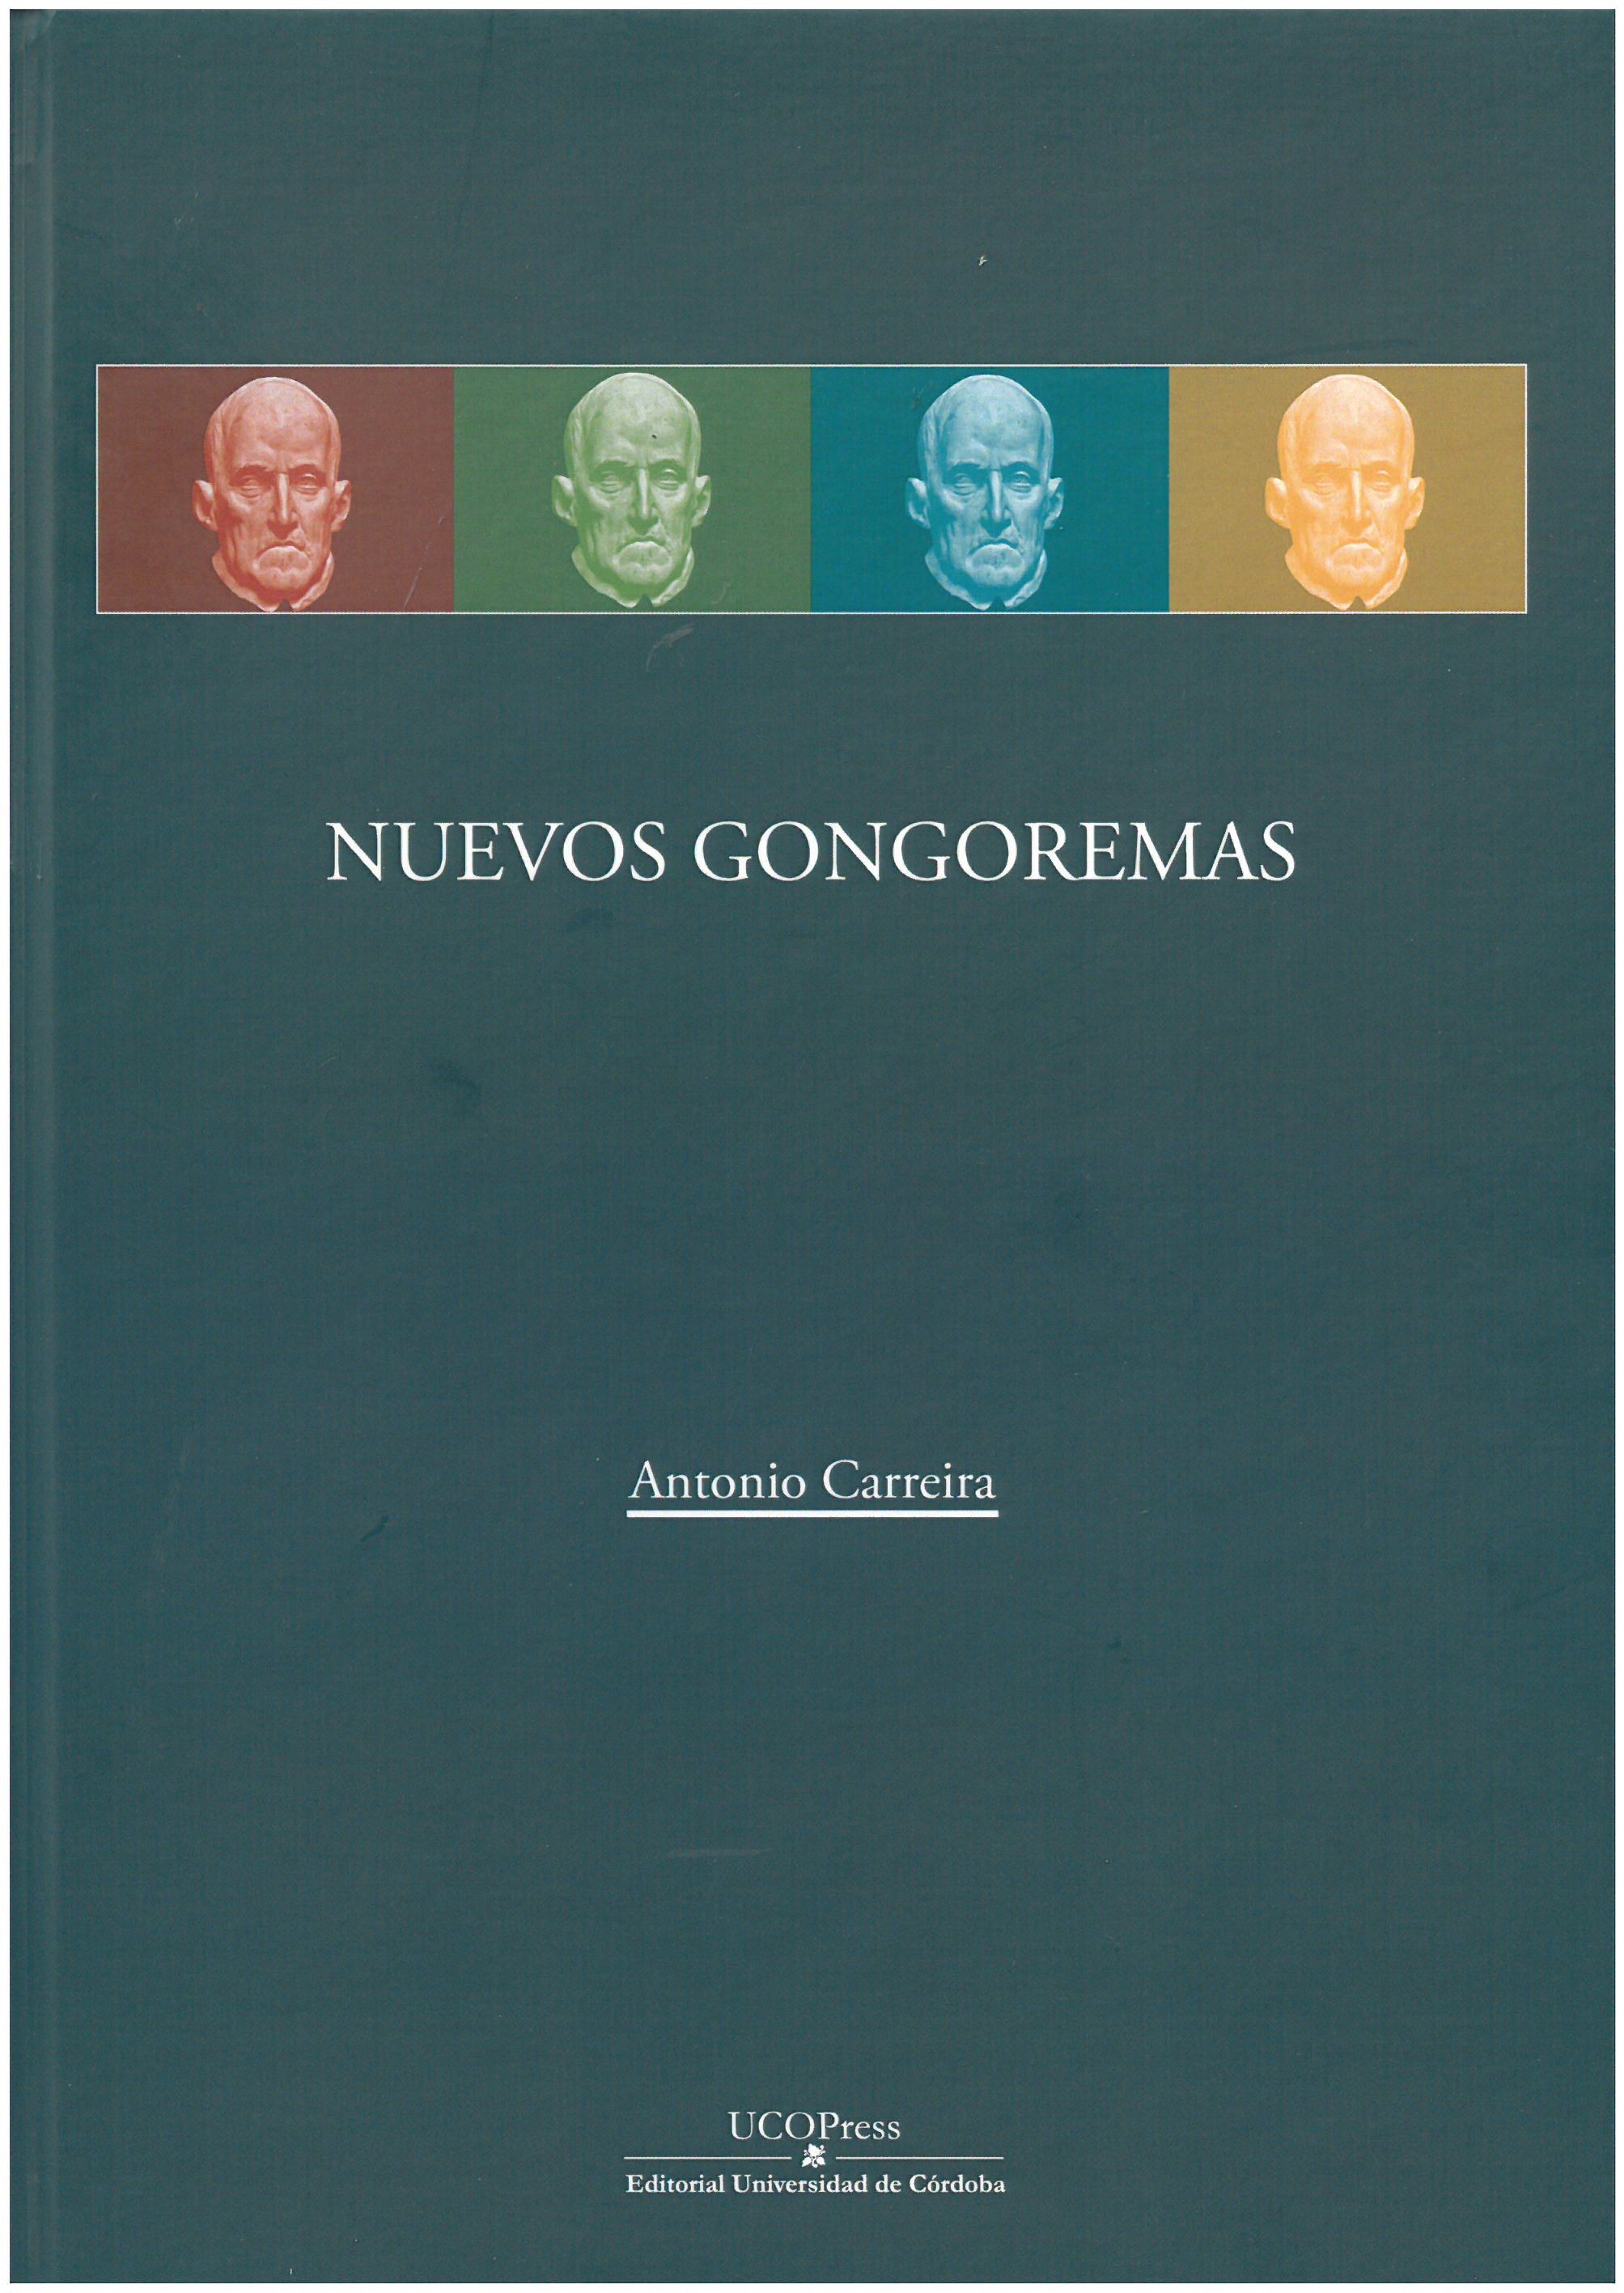 Imagen de portada del libro Nuevos gongoremas